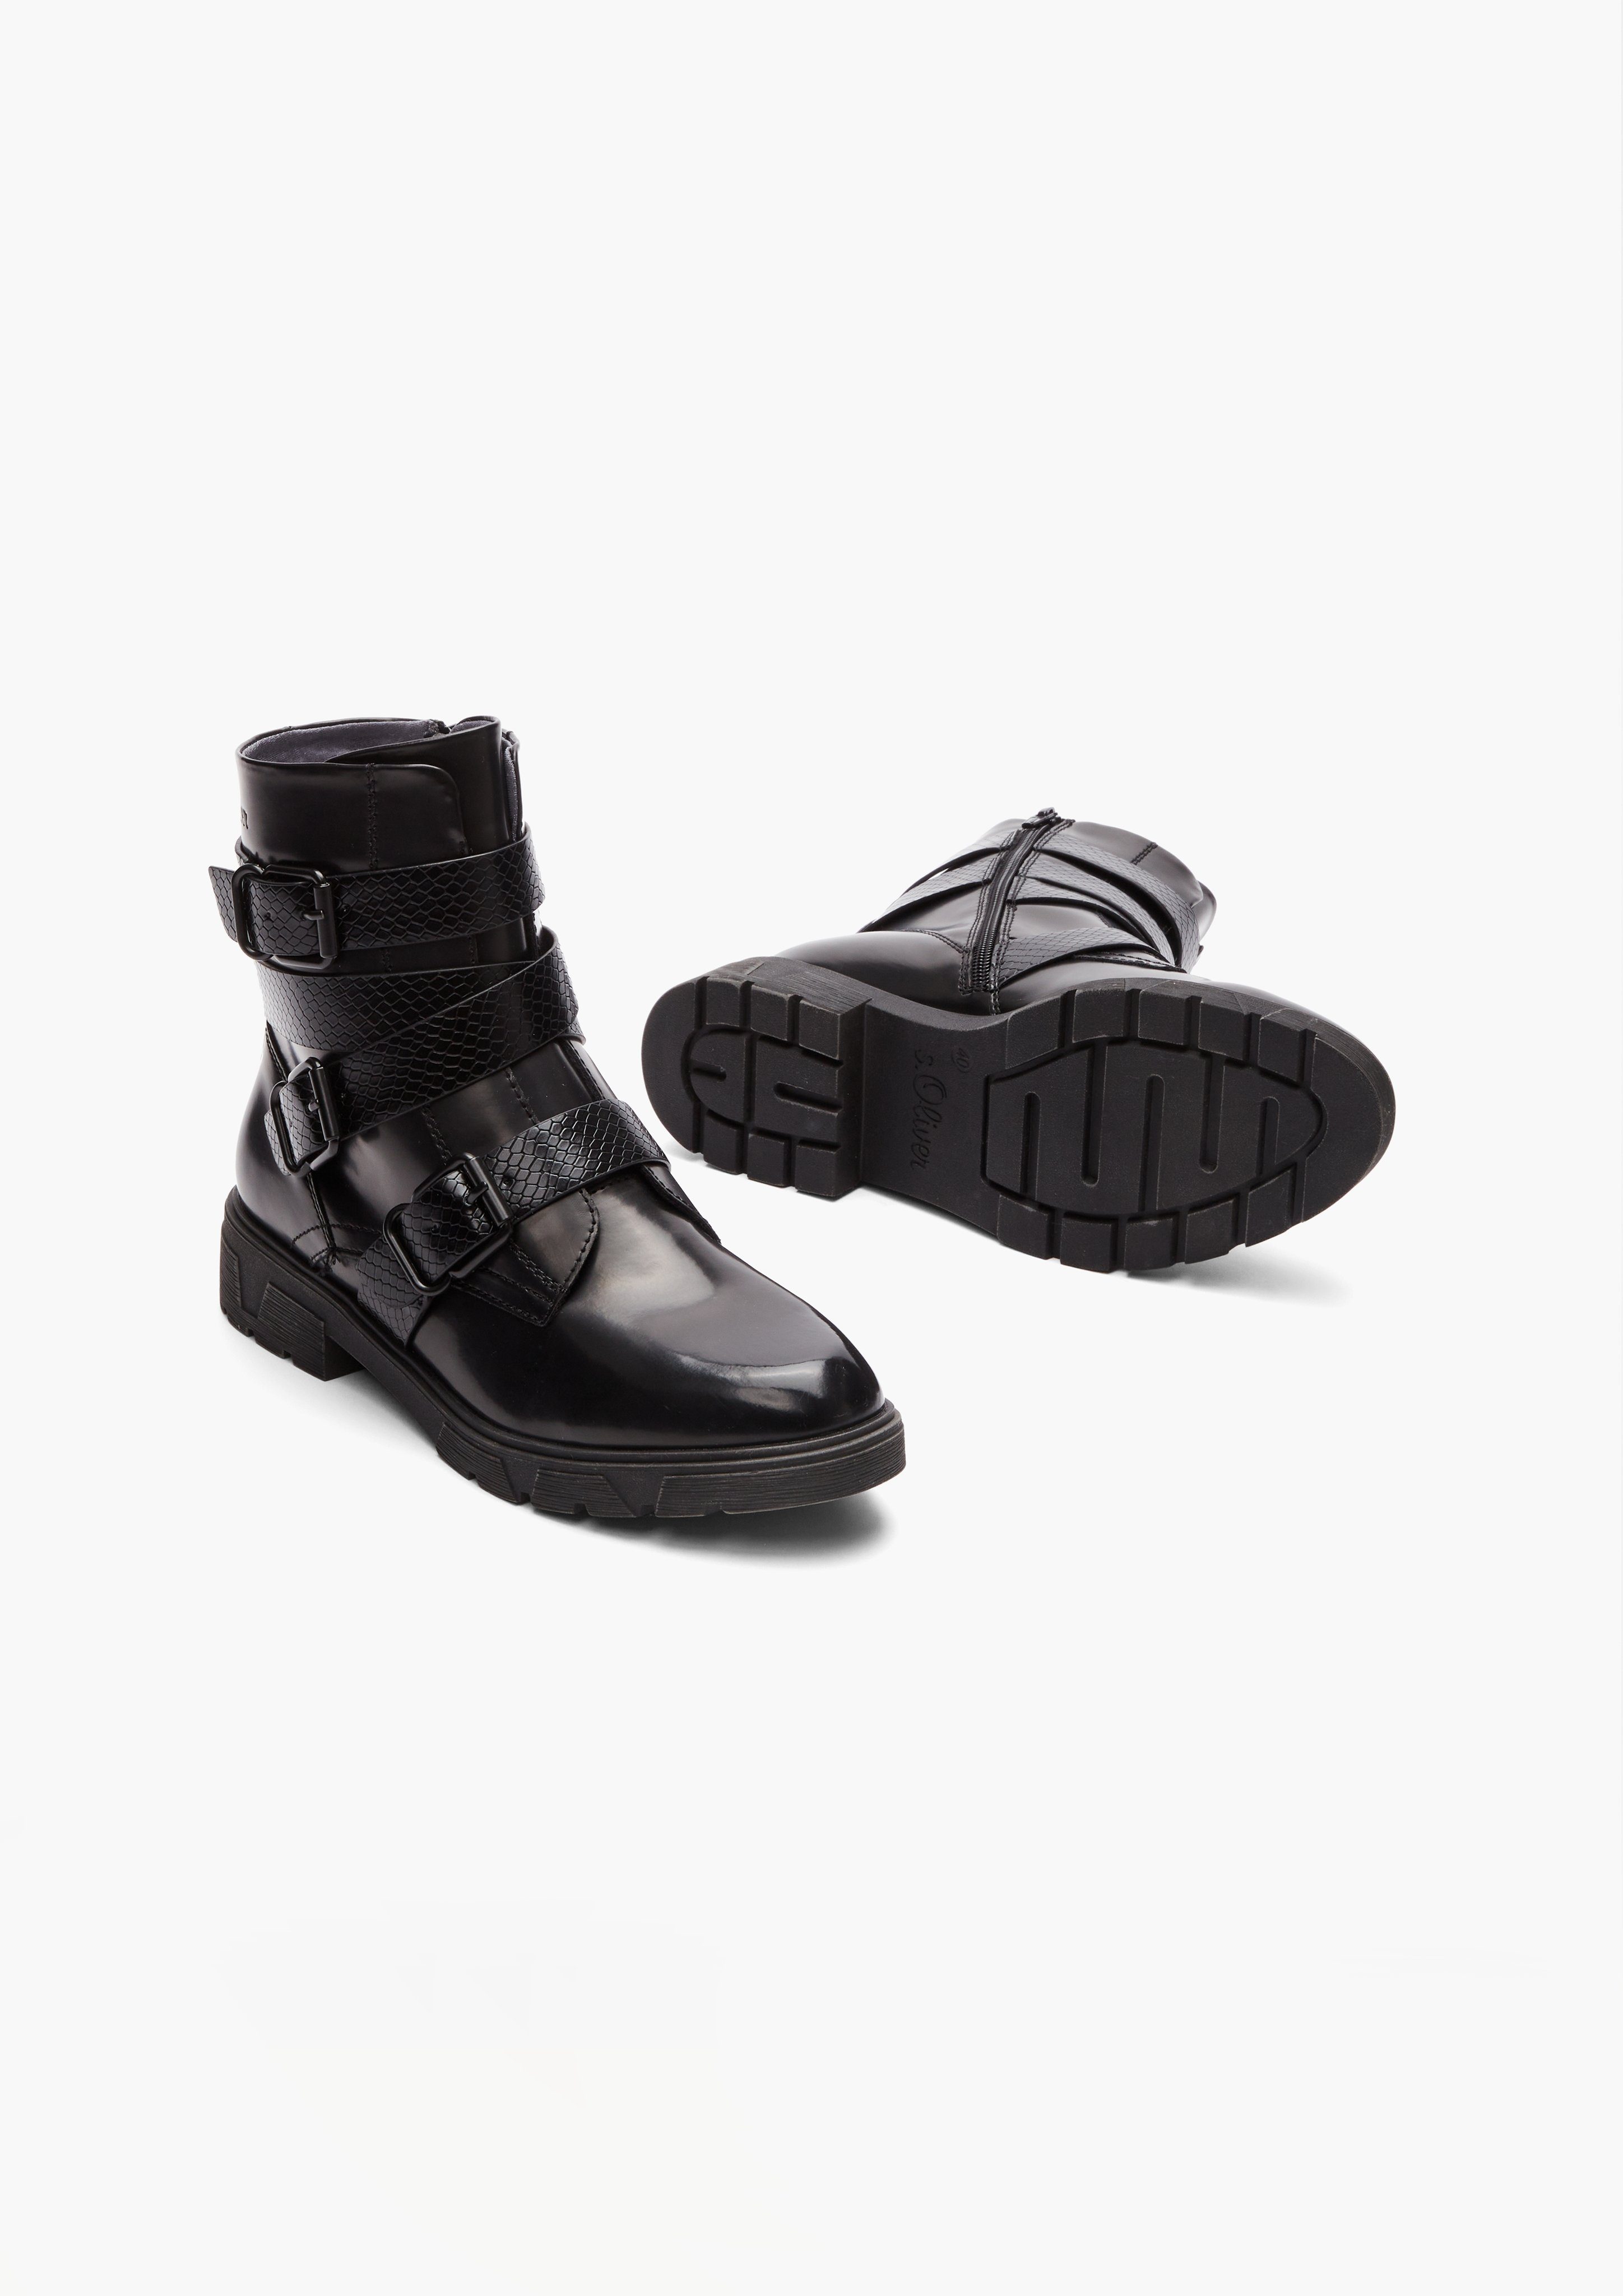 Schuhe Stiefel s.Oliver Boots mit Riegel-Details Stiefel Riegel